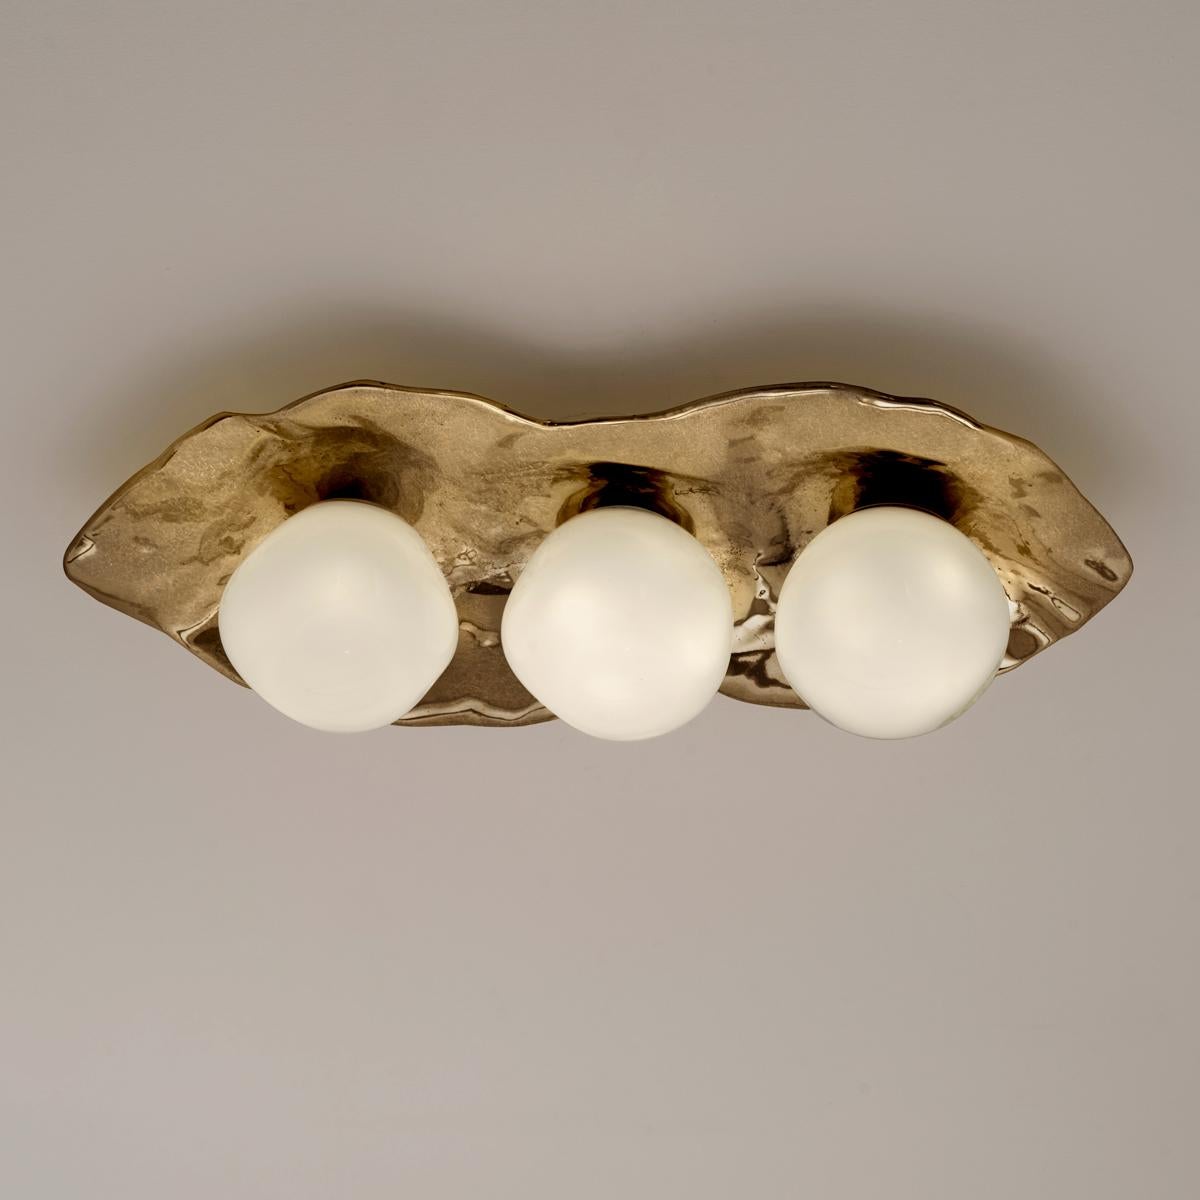 Die Deckenleuchte Shell ist aus Messing geschmiedet und bildet eine organische Muschel, in die drei unserer mundgeblasenen Sfera-Gläser aus Murano eingebettet sind.

Auf den ersten Bildern ist die Leuchte in Bronzo Nuvolato abgebildet. Die